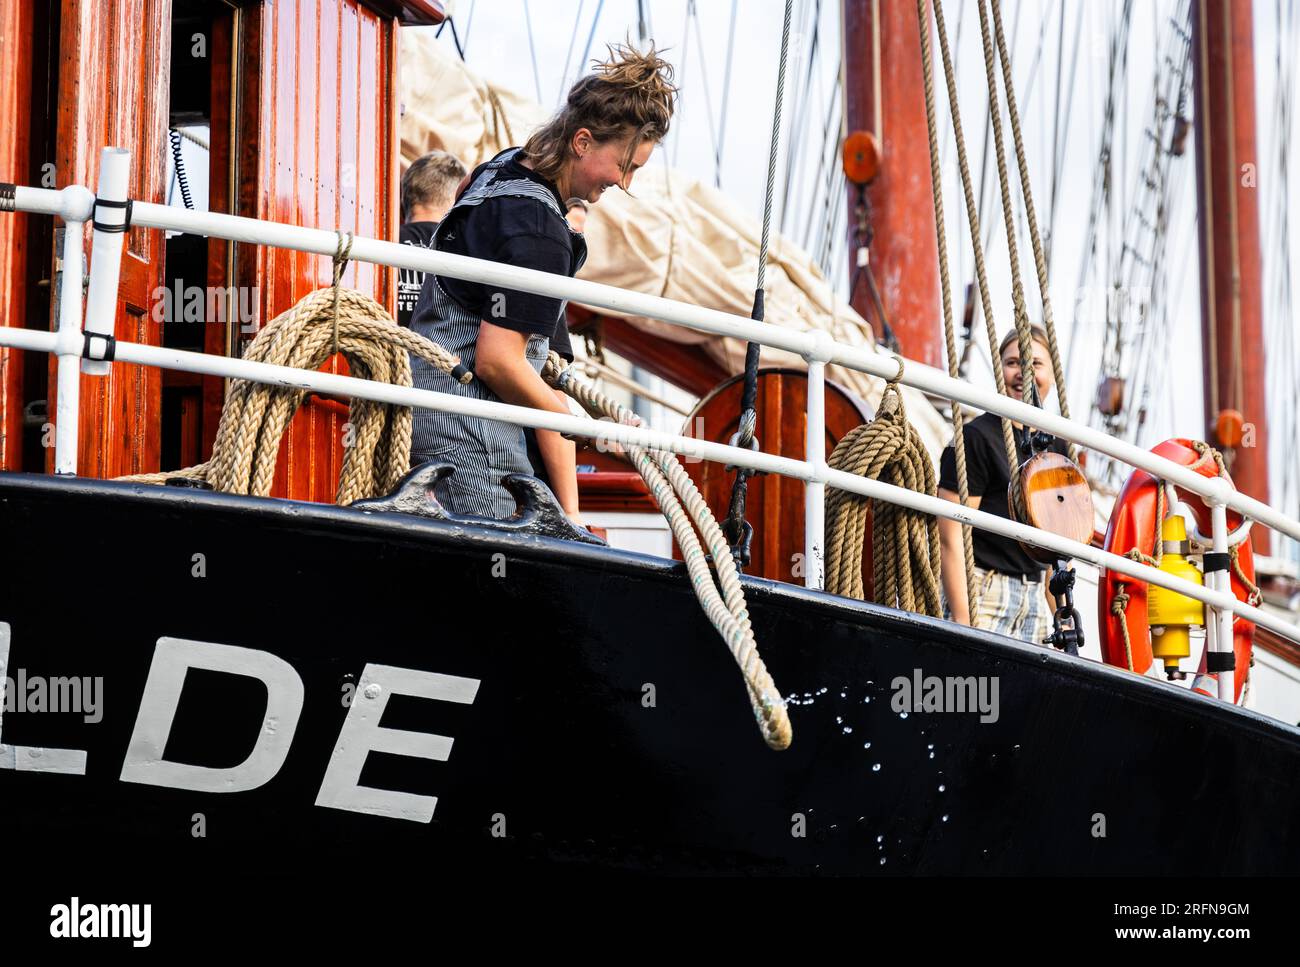 ROTTERDAM - die Crew geht auf die Oosterschelde. Das Rotterdamer Schiff startet für eine zweijährige Weltreise, die der Wissenschaftler Charles Darwin vor zwei Jahrhunderten gemacht hat. Ziel der Reise mit dem mehr als hundert Jahre alten Schiff ist es, jungen Wissenschaftlern bei der Bekämpfung des Klimawandels zu helfen. ANP JEFFREY GROENEWEG netherlands Out - belgium Out Credit: ANP/Alamy Live News Stockfoto